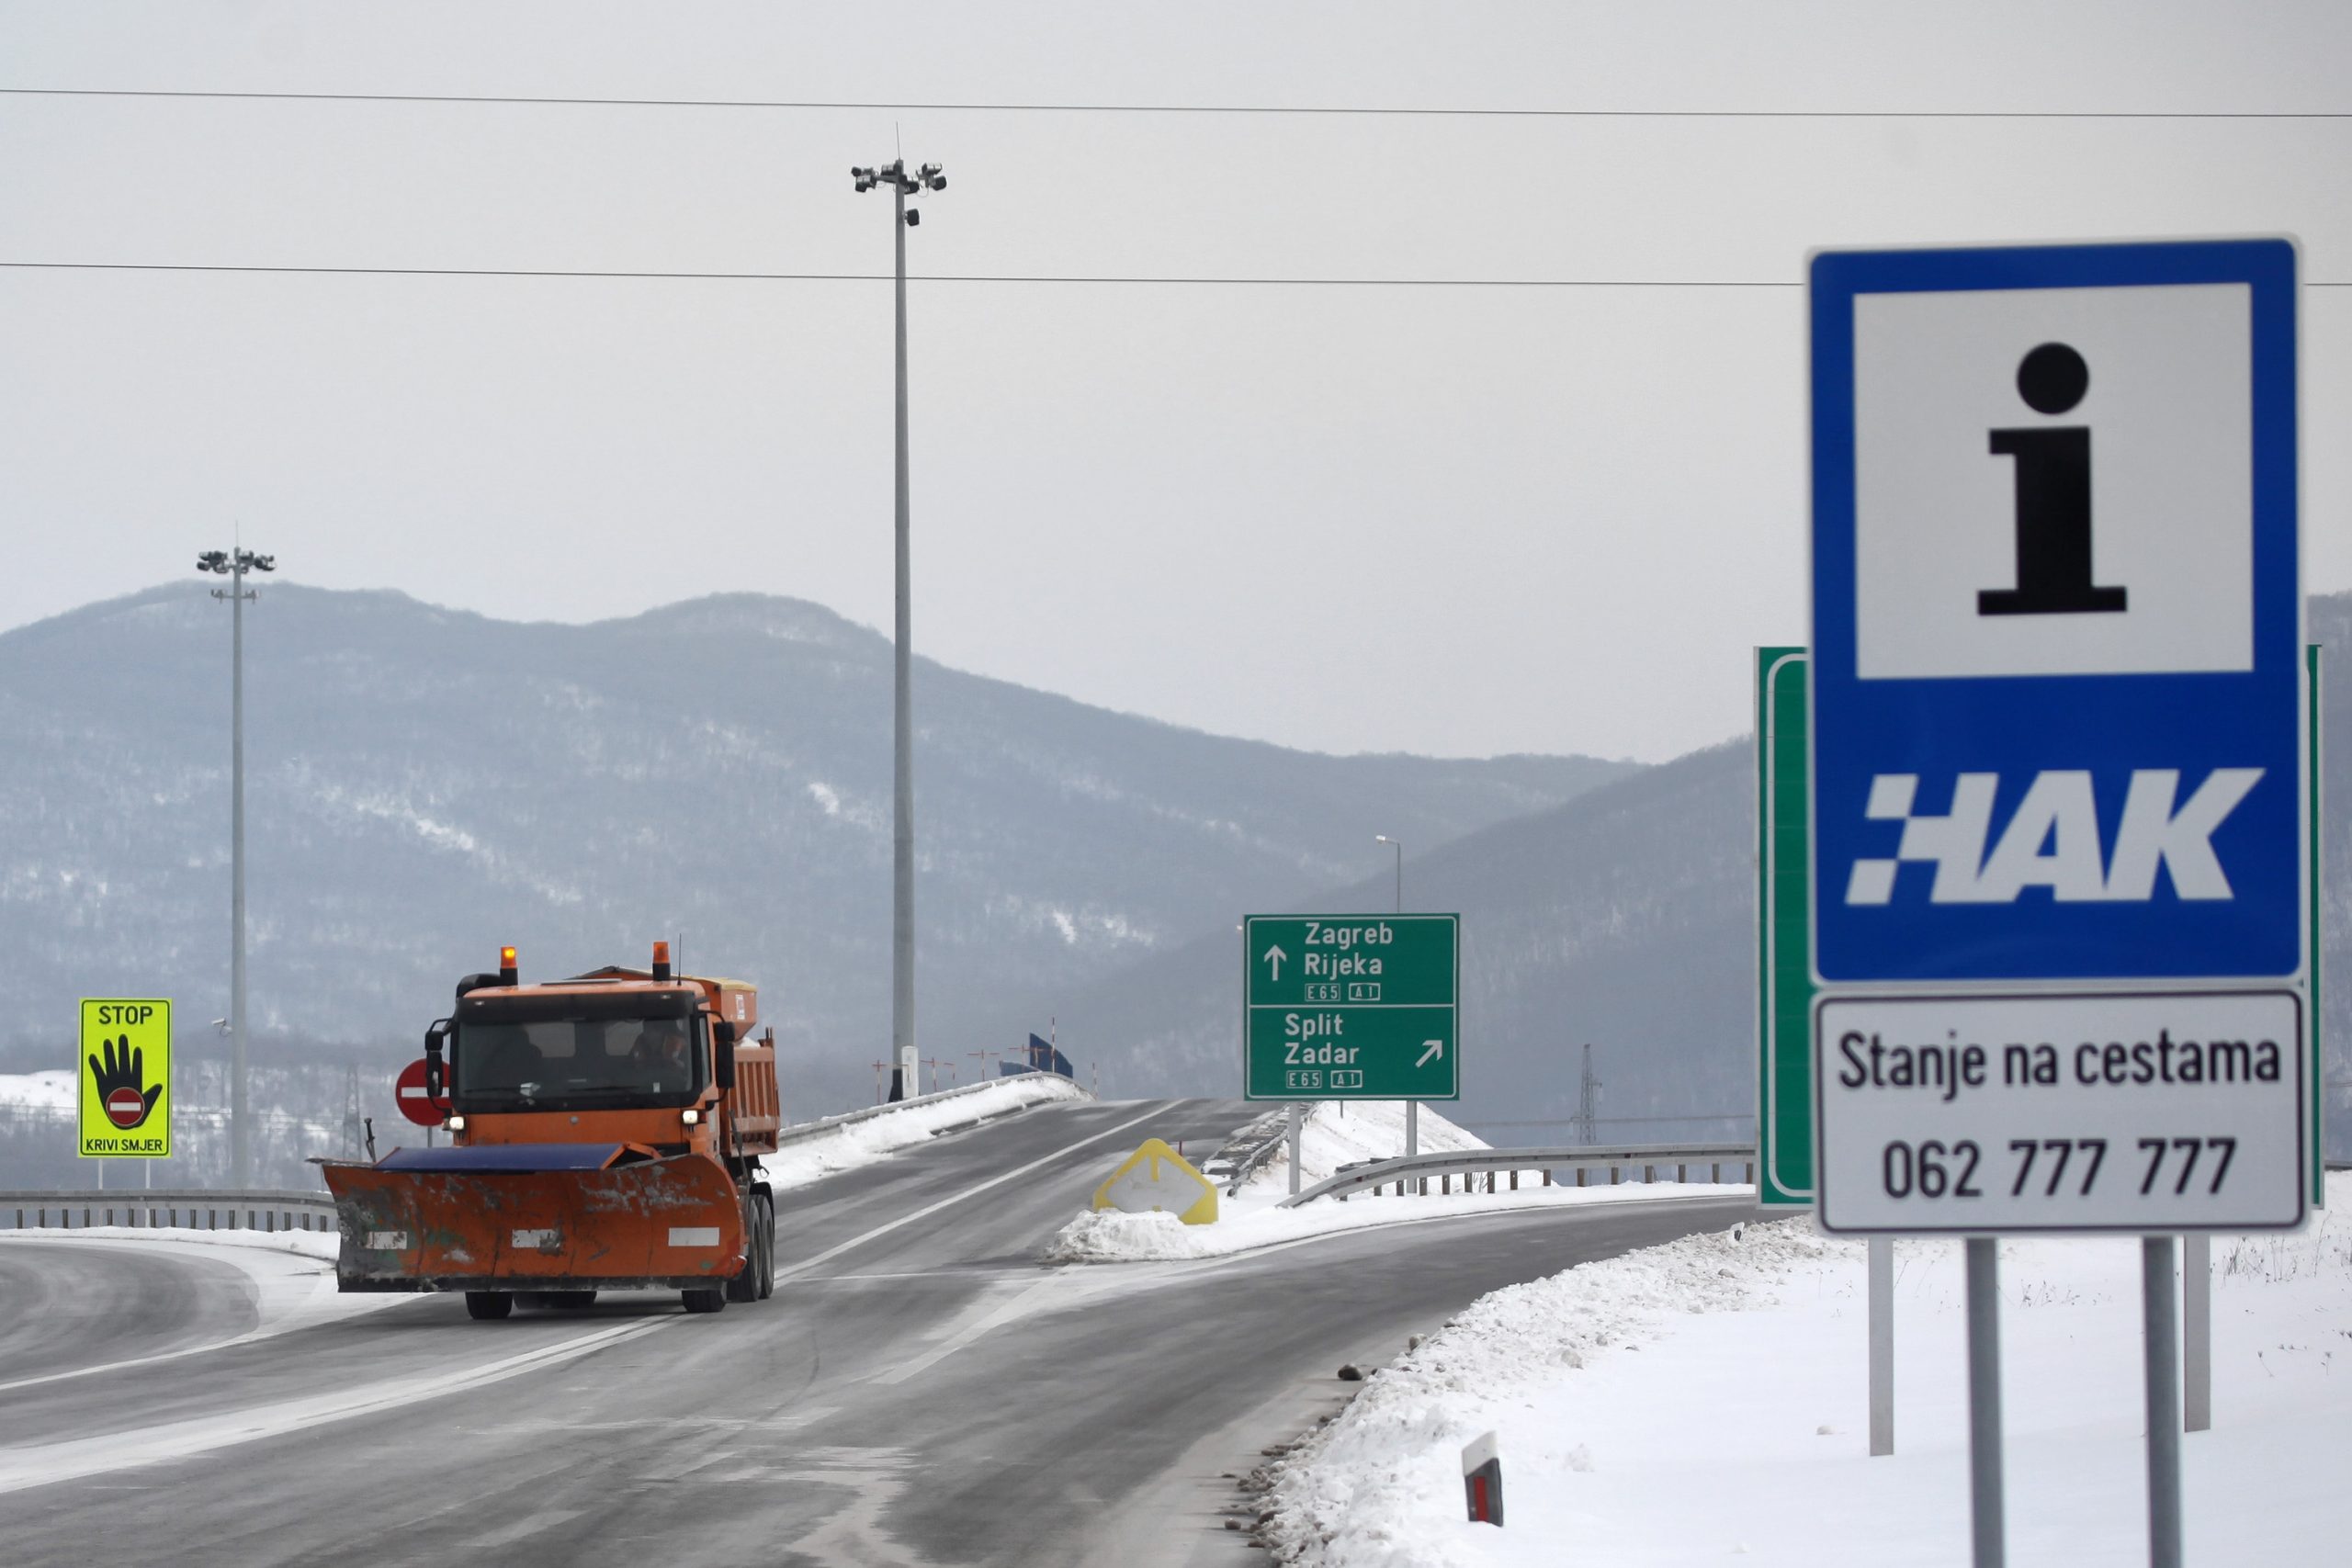 09.02.2012., Zadar - Ralica cisti nanose snijega na Autocesti A1. 
Photo: Filip Brala/PIXSELL